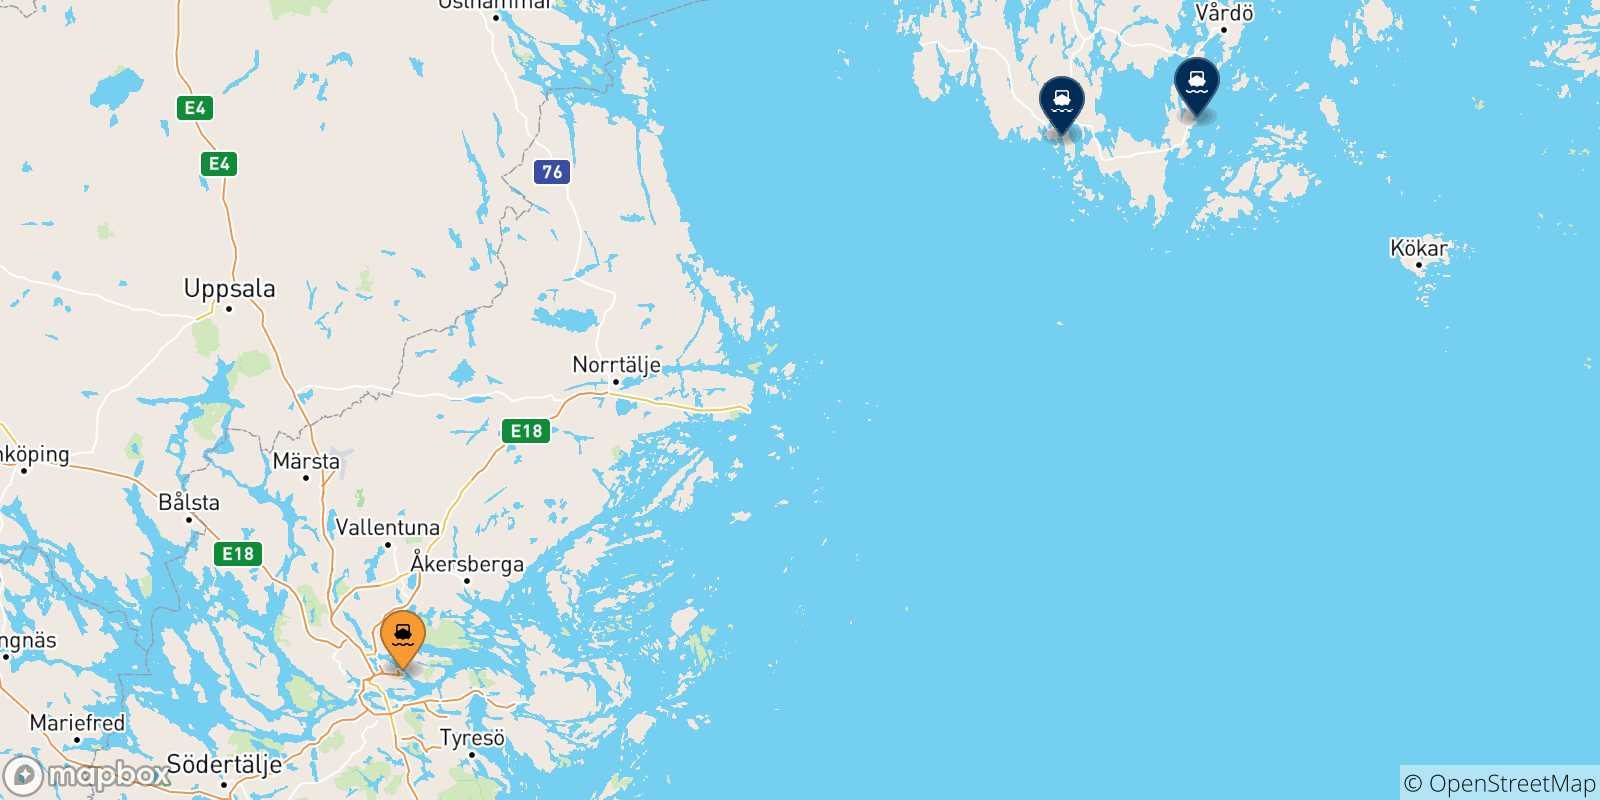 Mappa delle possibili rotte tra Stoccolma e le Isole Aland